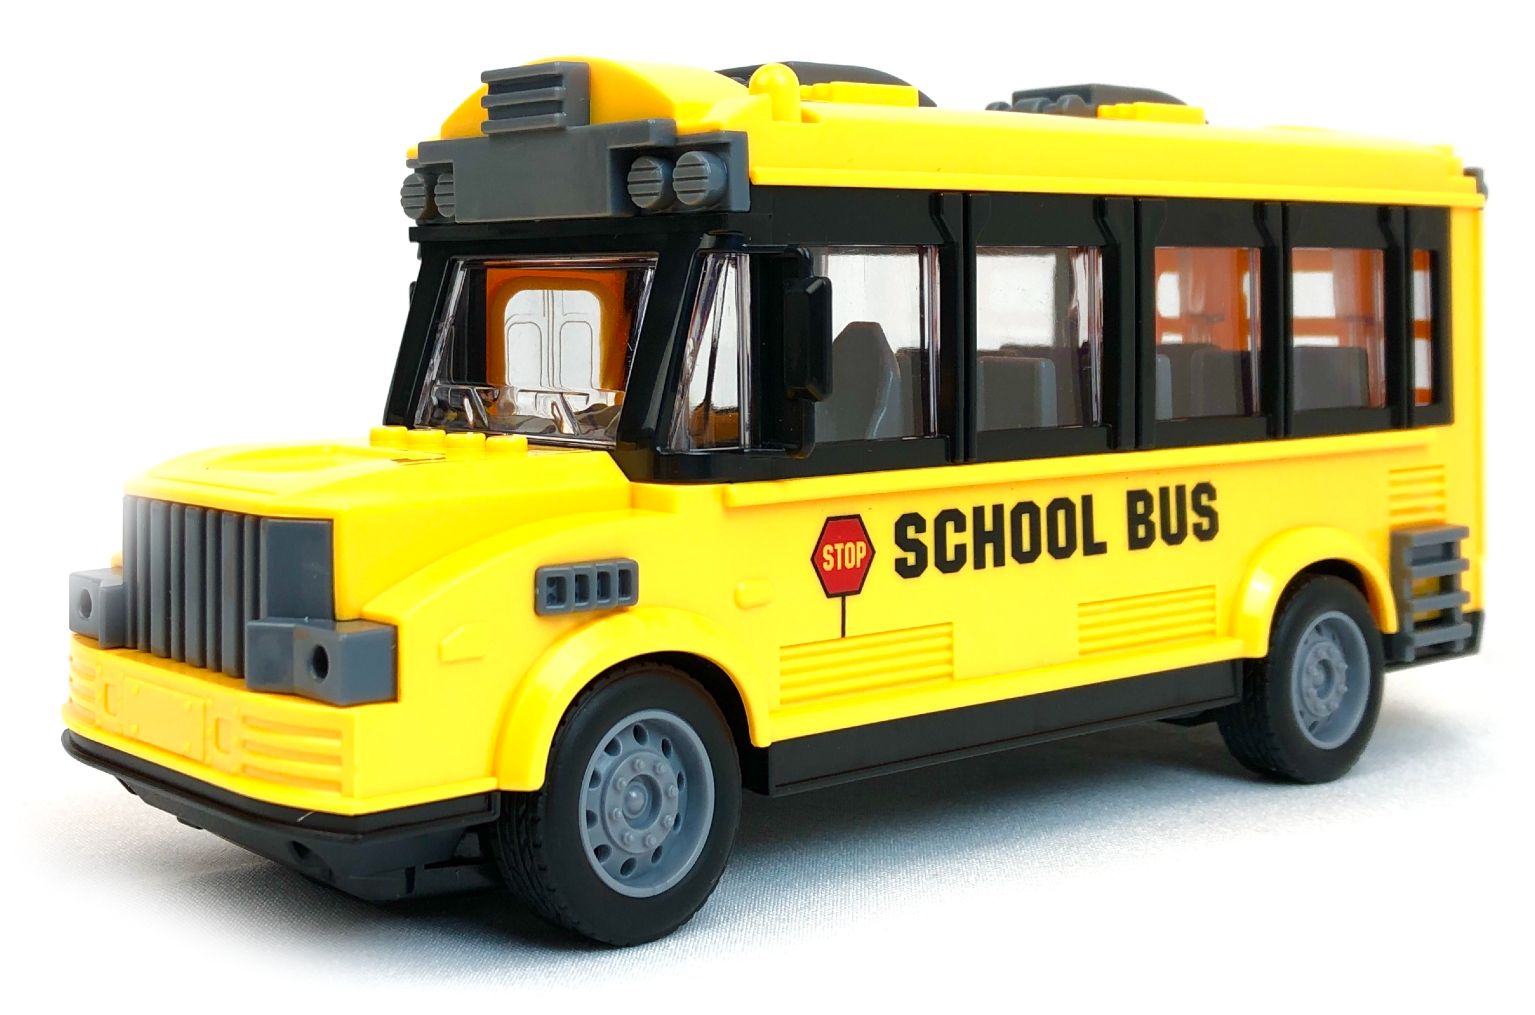 Радиоуправляемый школьный автобус City Bus School Bus, 1:30 радиоуправляемый троллейбус city bus 1 32 подсветка салона фары светятся